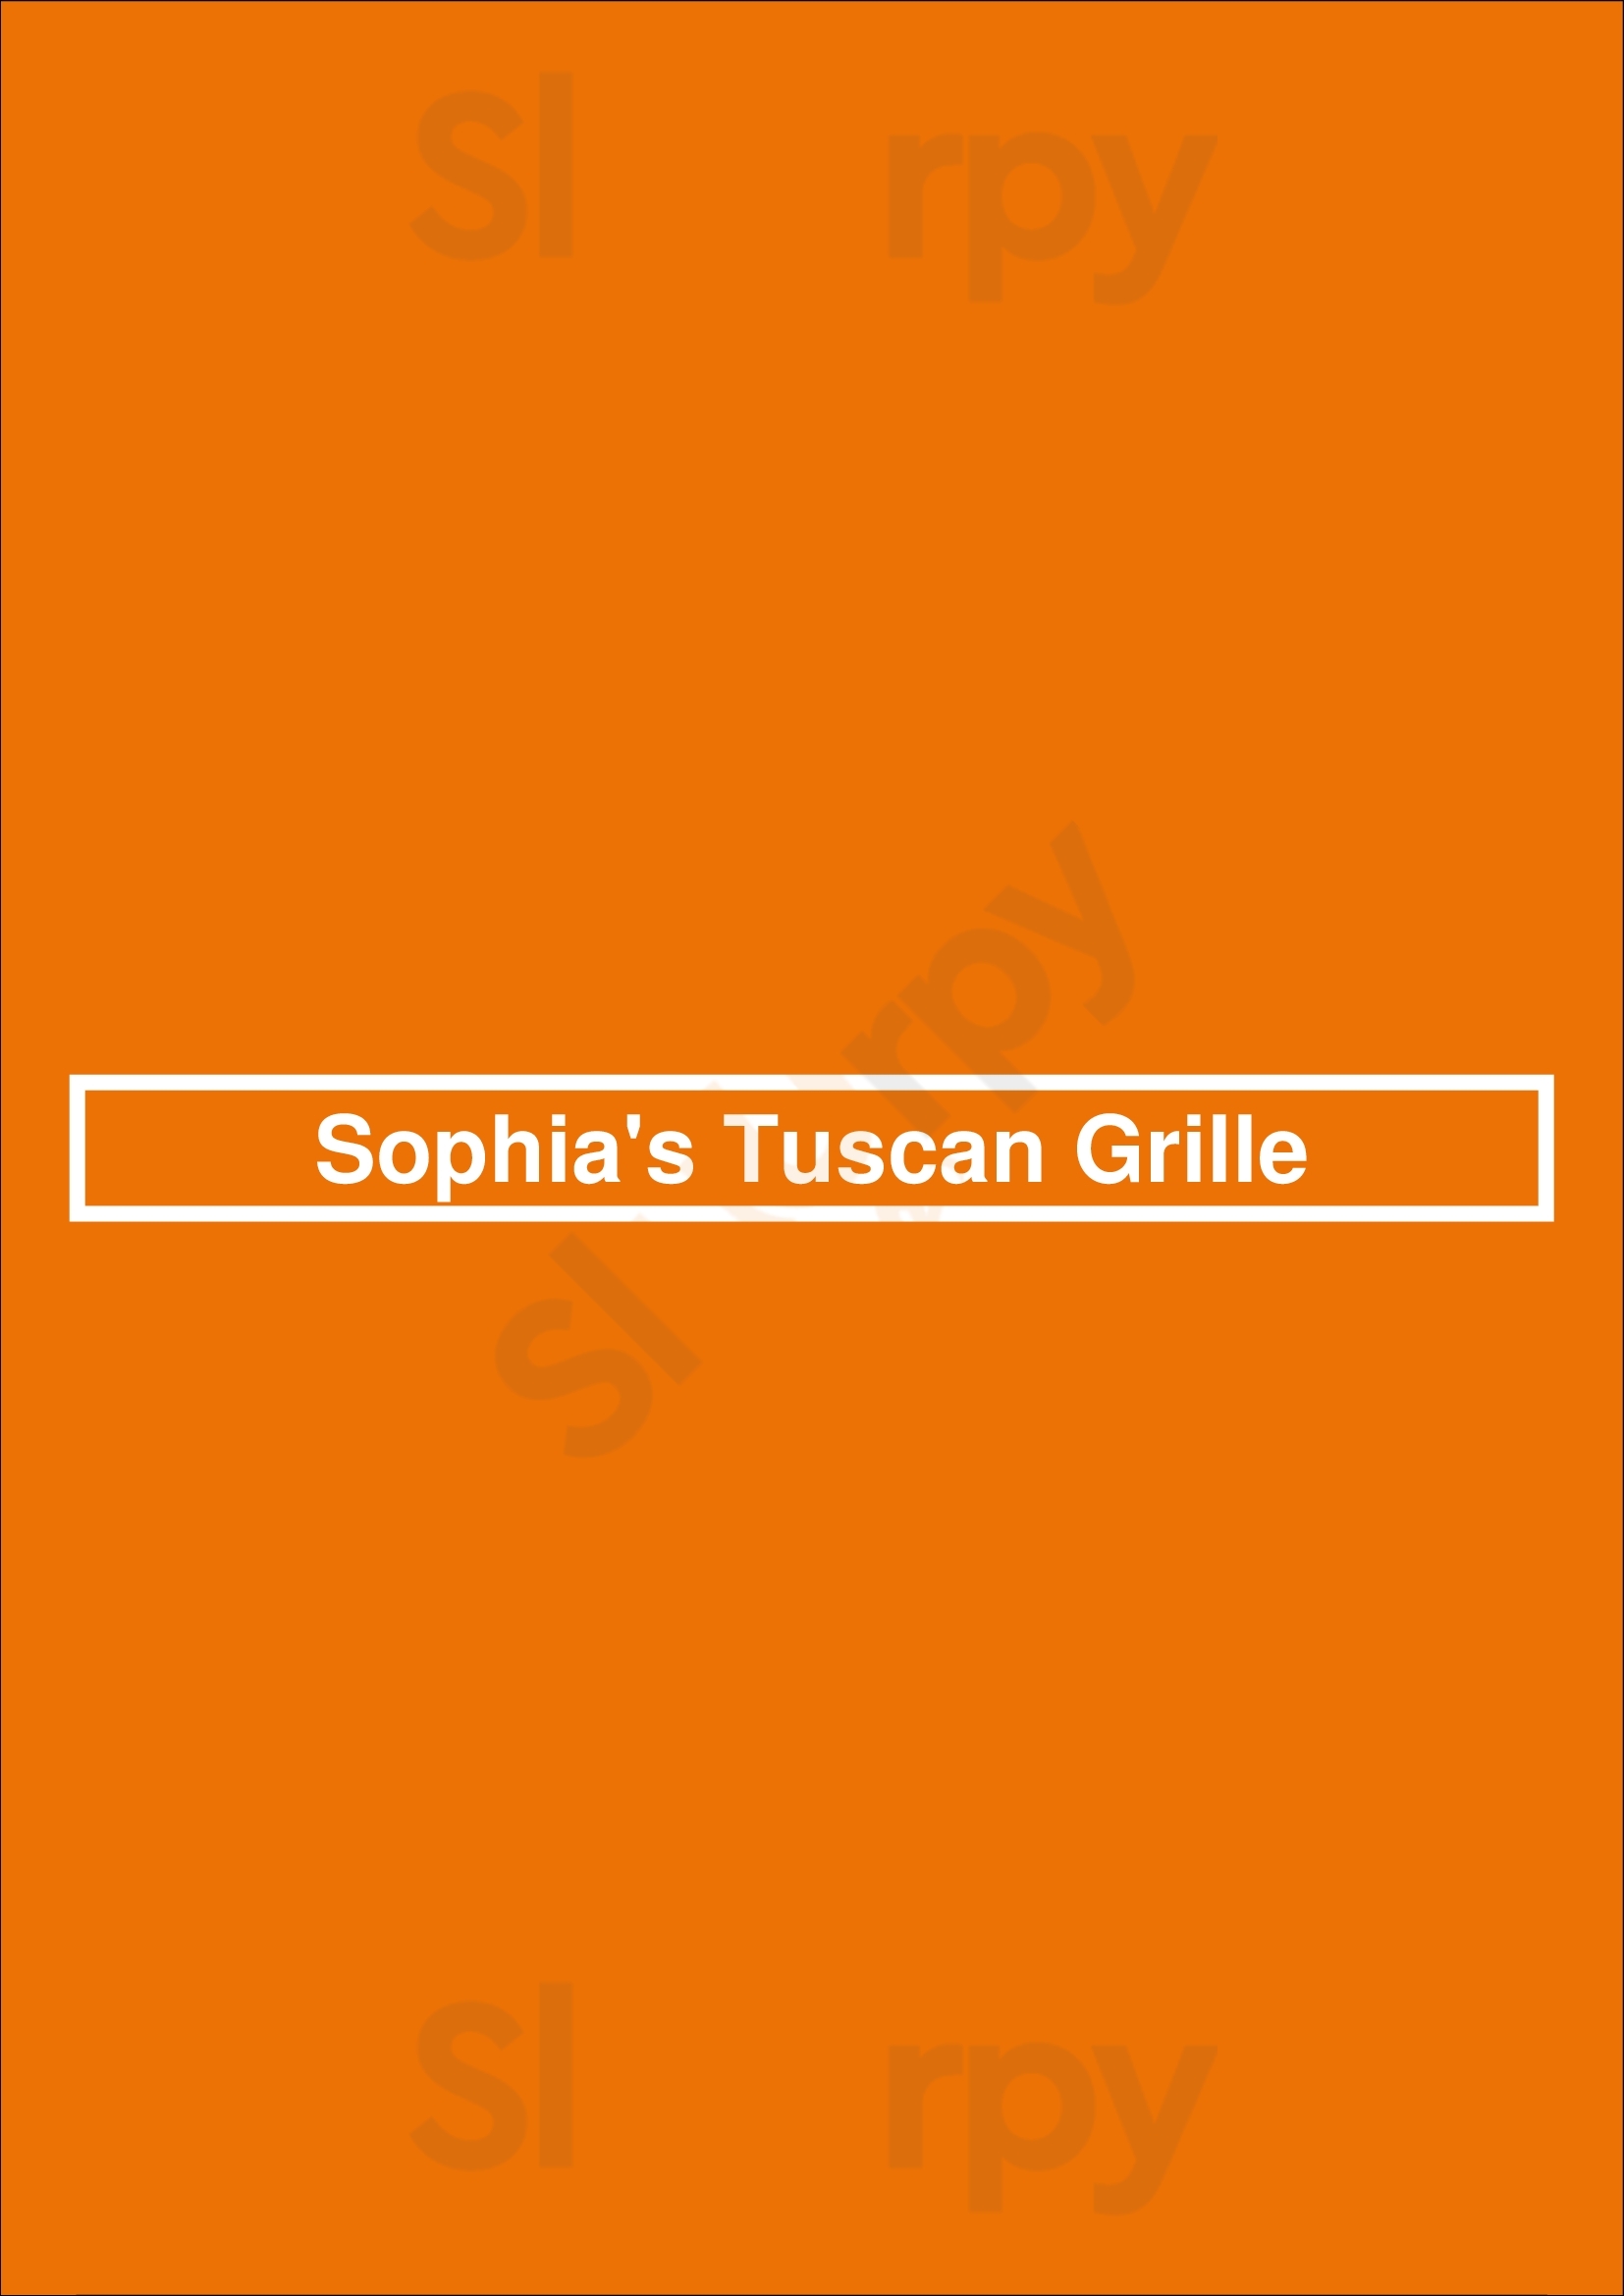 Sophia's Tuscan Grille Warwick Menu - 1